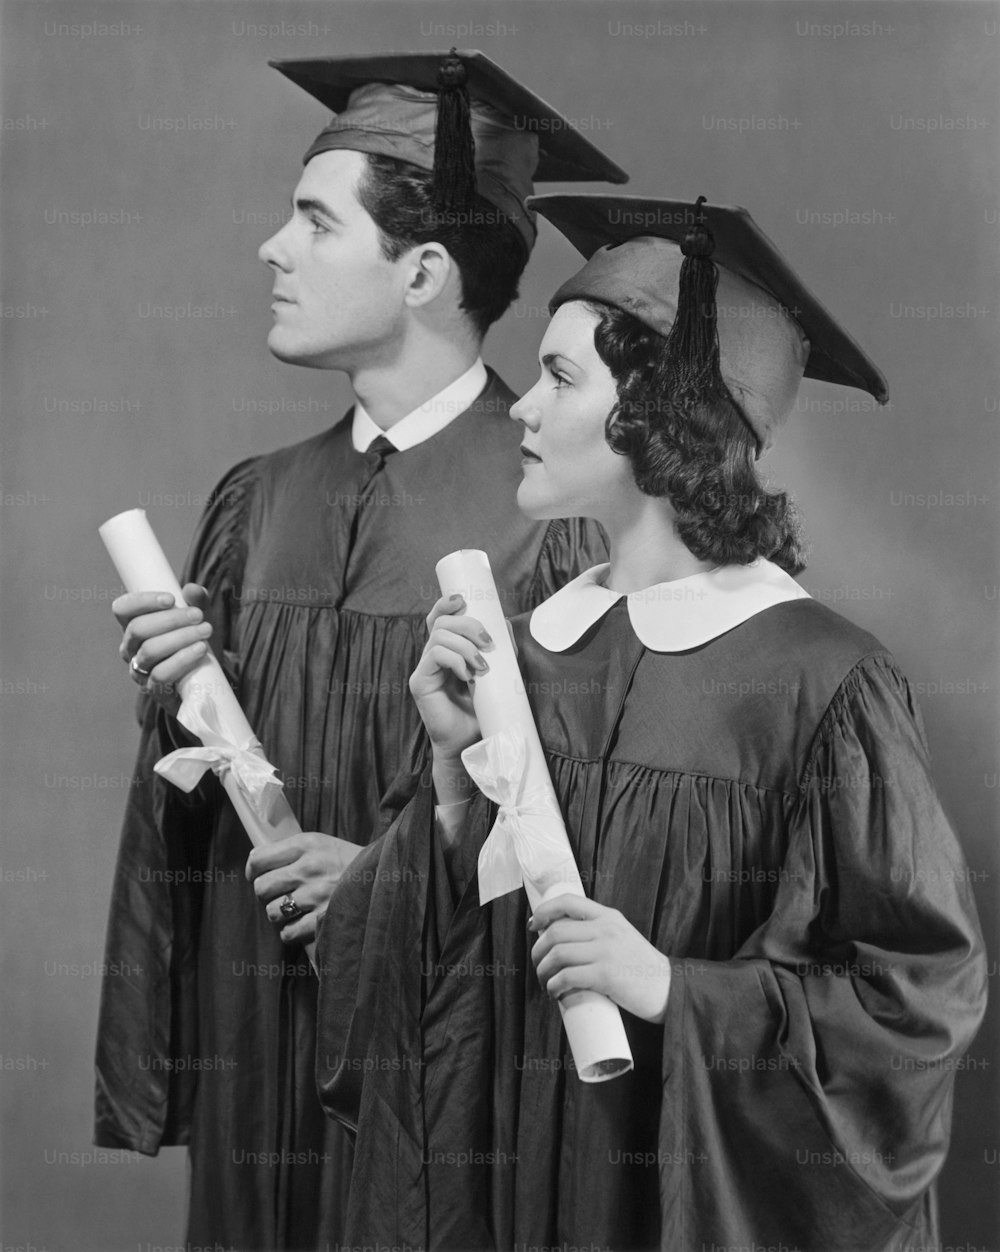 STATI UNITI - 1950 CIRCA: Ritratto di diplomati di scuola superiore.